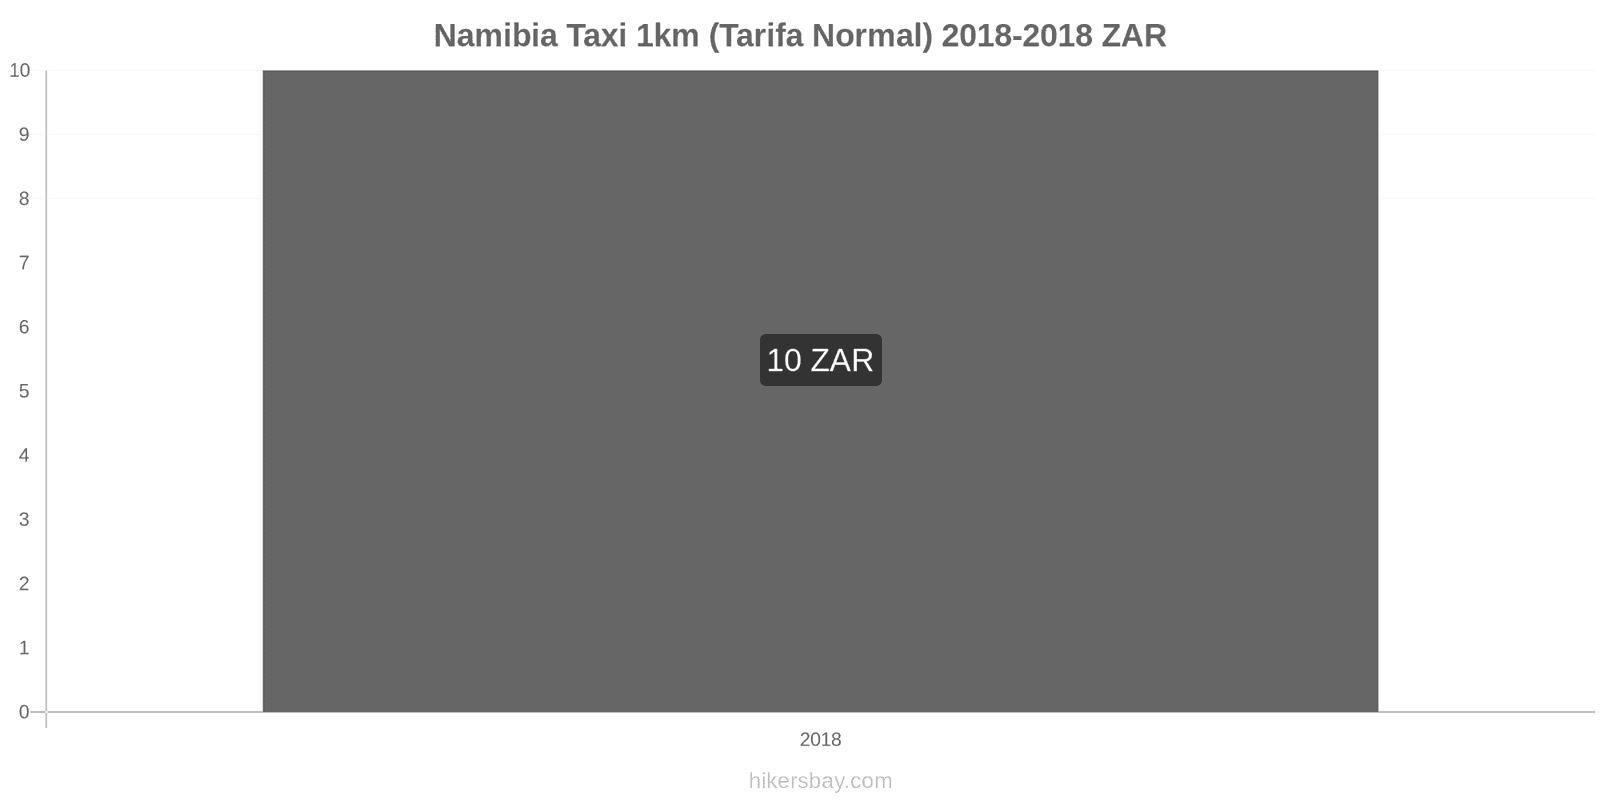 Namibia cambios de precios Taxi 1km (tarifa normal) hikersbay.com